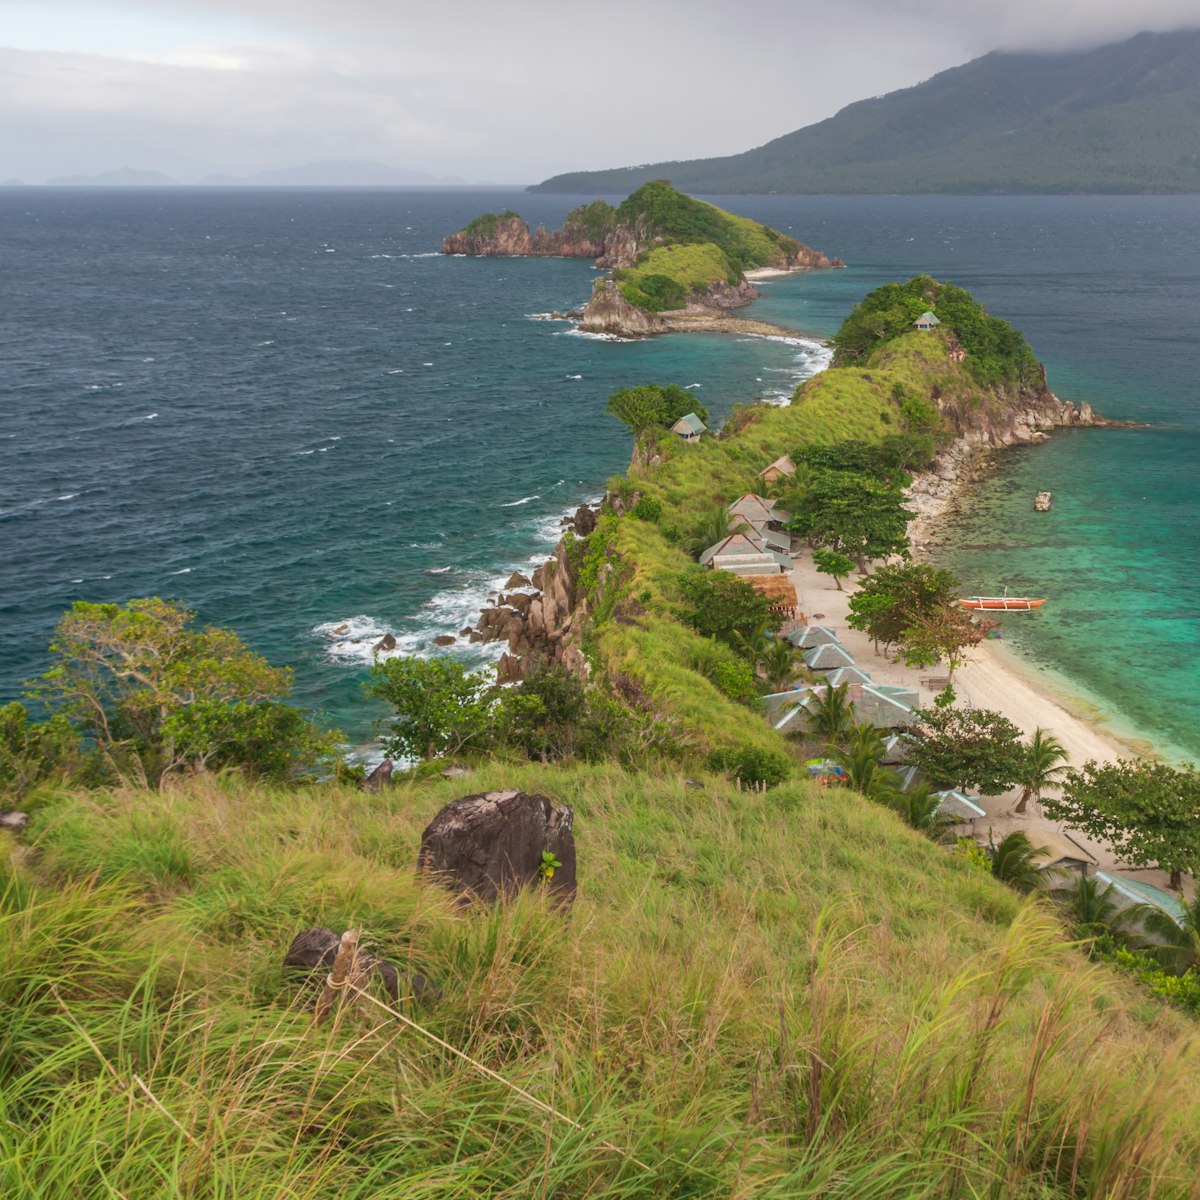 Sambawan island, Philippines